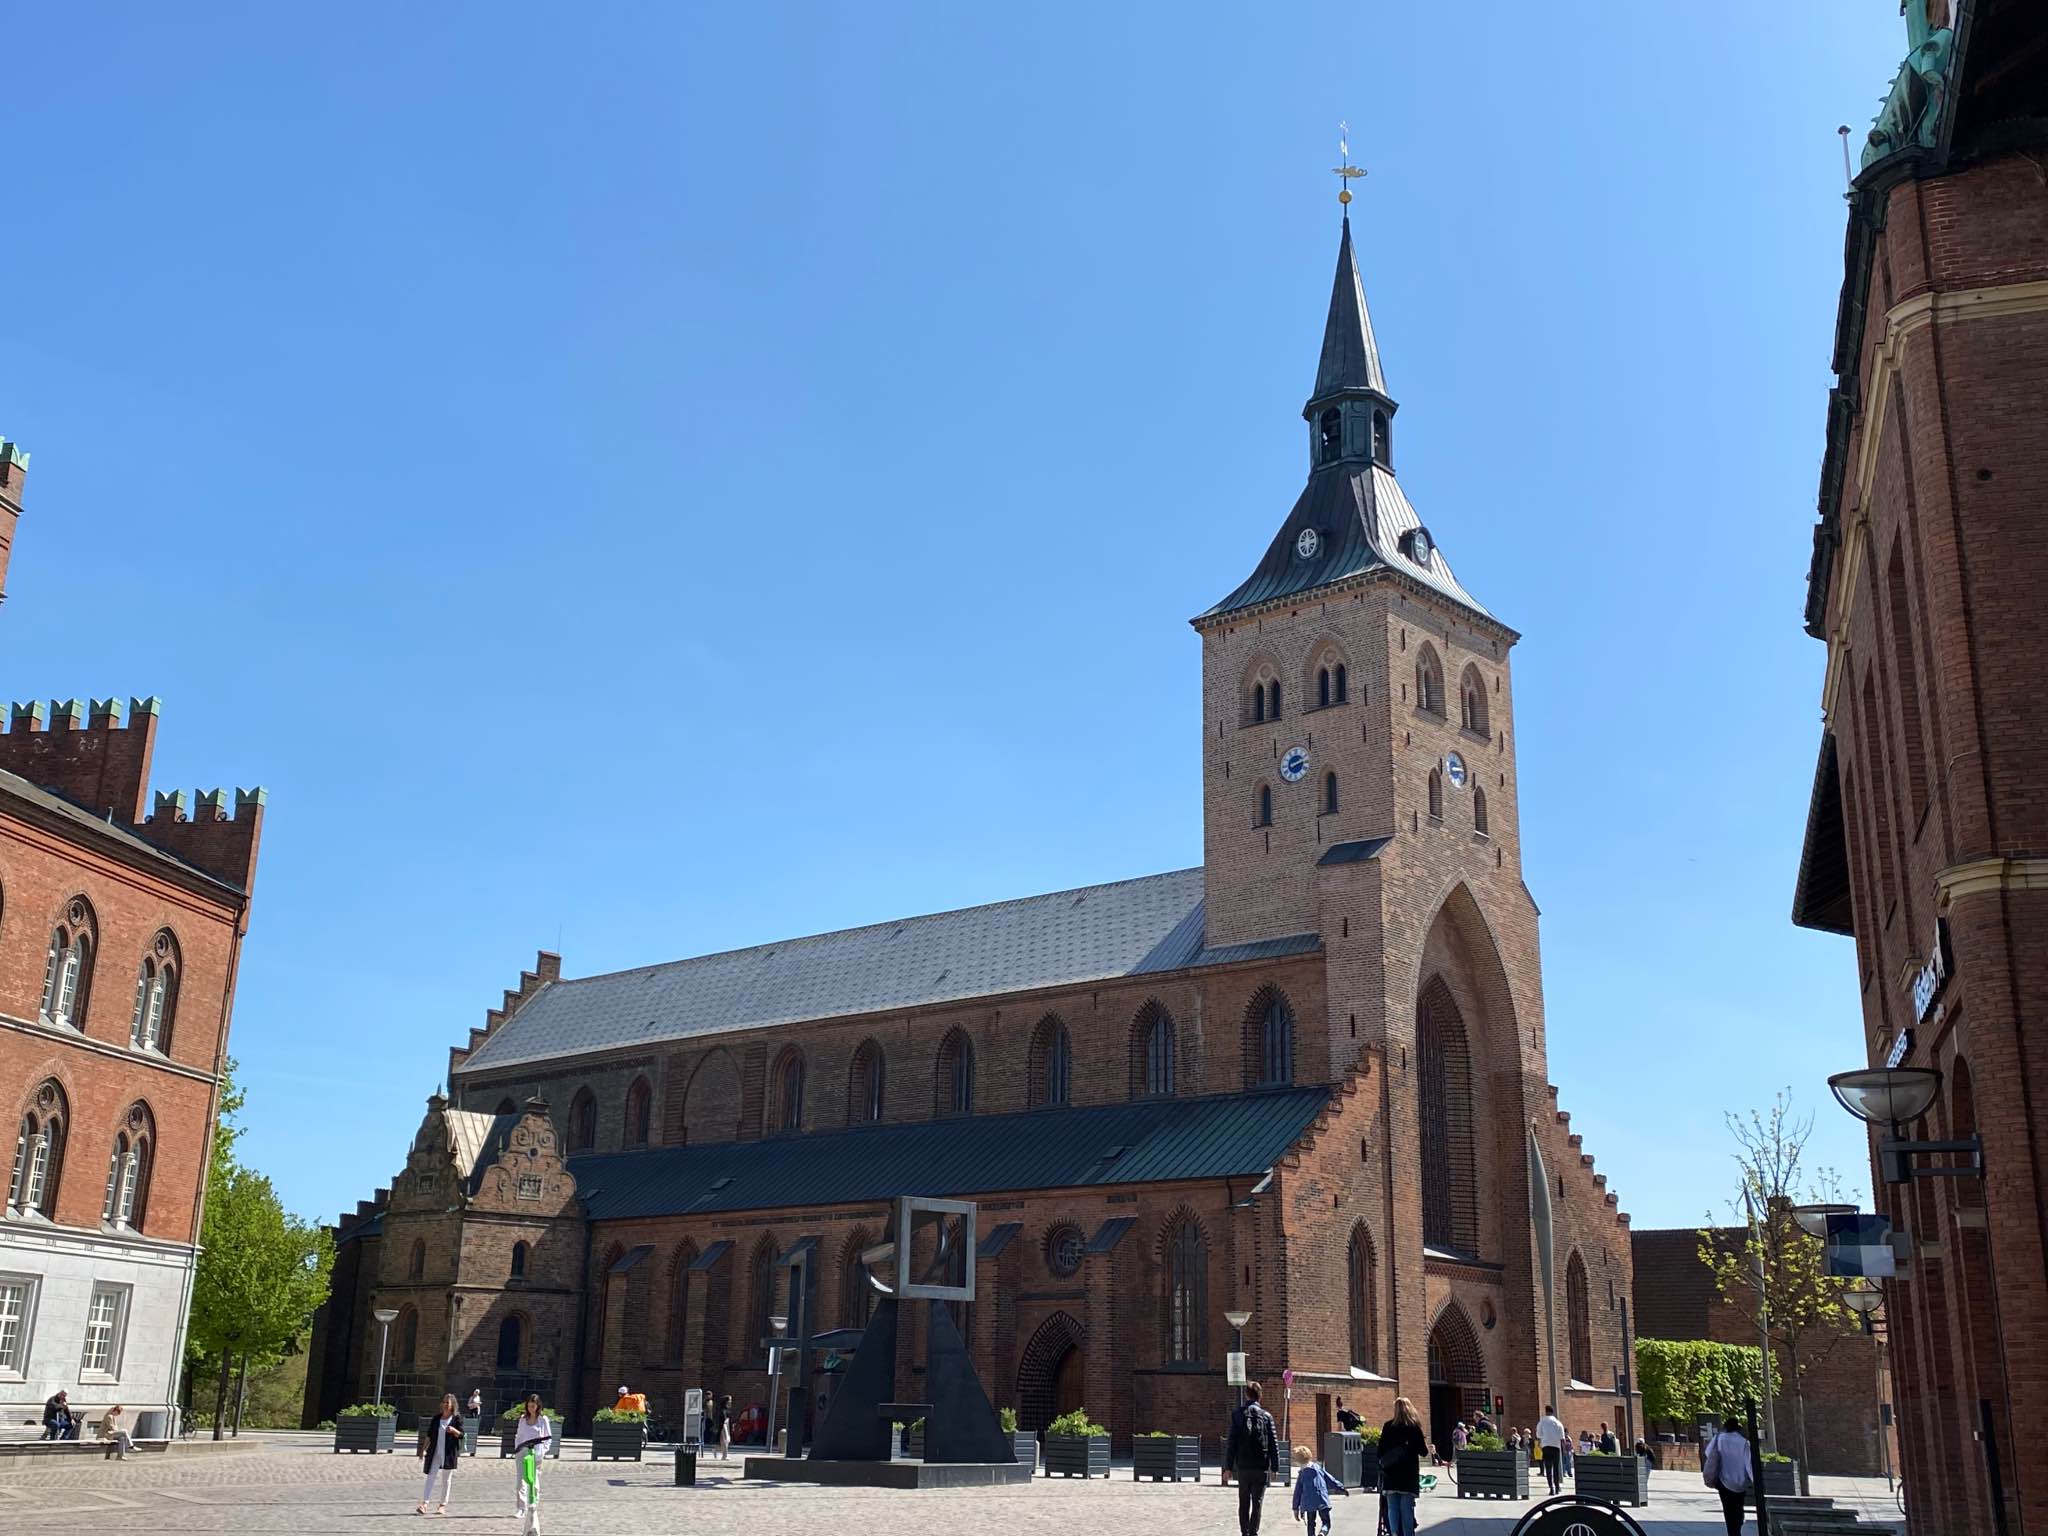 デンマーク第３の都市といわれるオーデンセにある聖クヌーズ修道院です。 オーデンセと言えば、H.Cアンデルセンという童話作家の出身地であり、市内にはアンデルセンに関連する建物や銅像などがたくさんあります。道路に書かれた足跡をたどると関連建築物にたどり着けるようになっています。